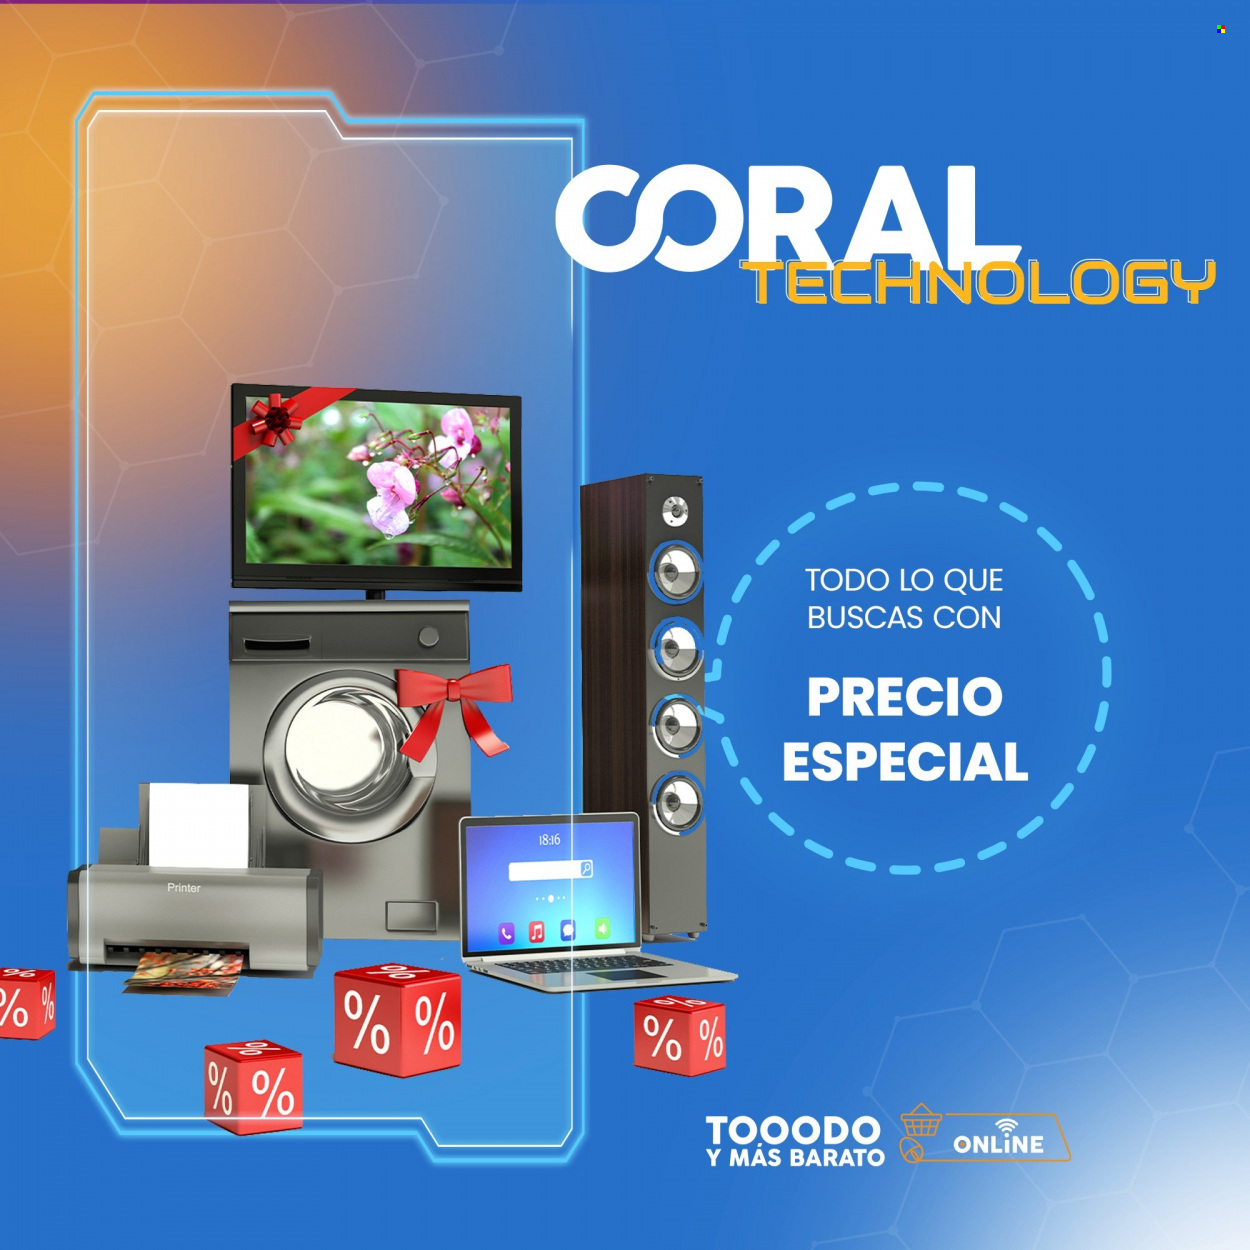 Catálogo Coral Hipermercados. Página 1.